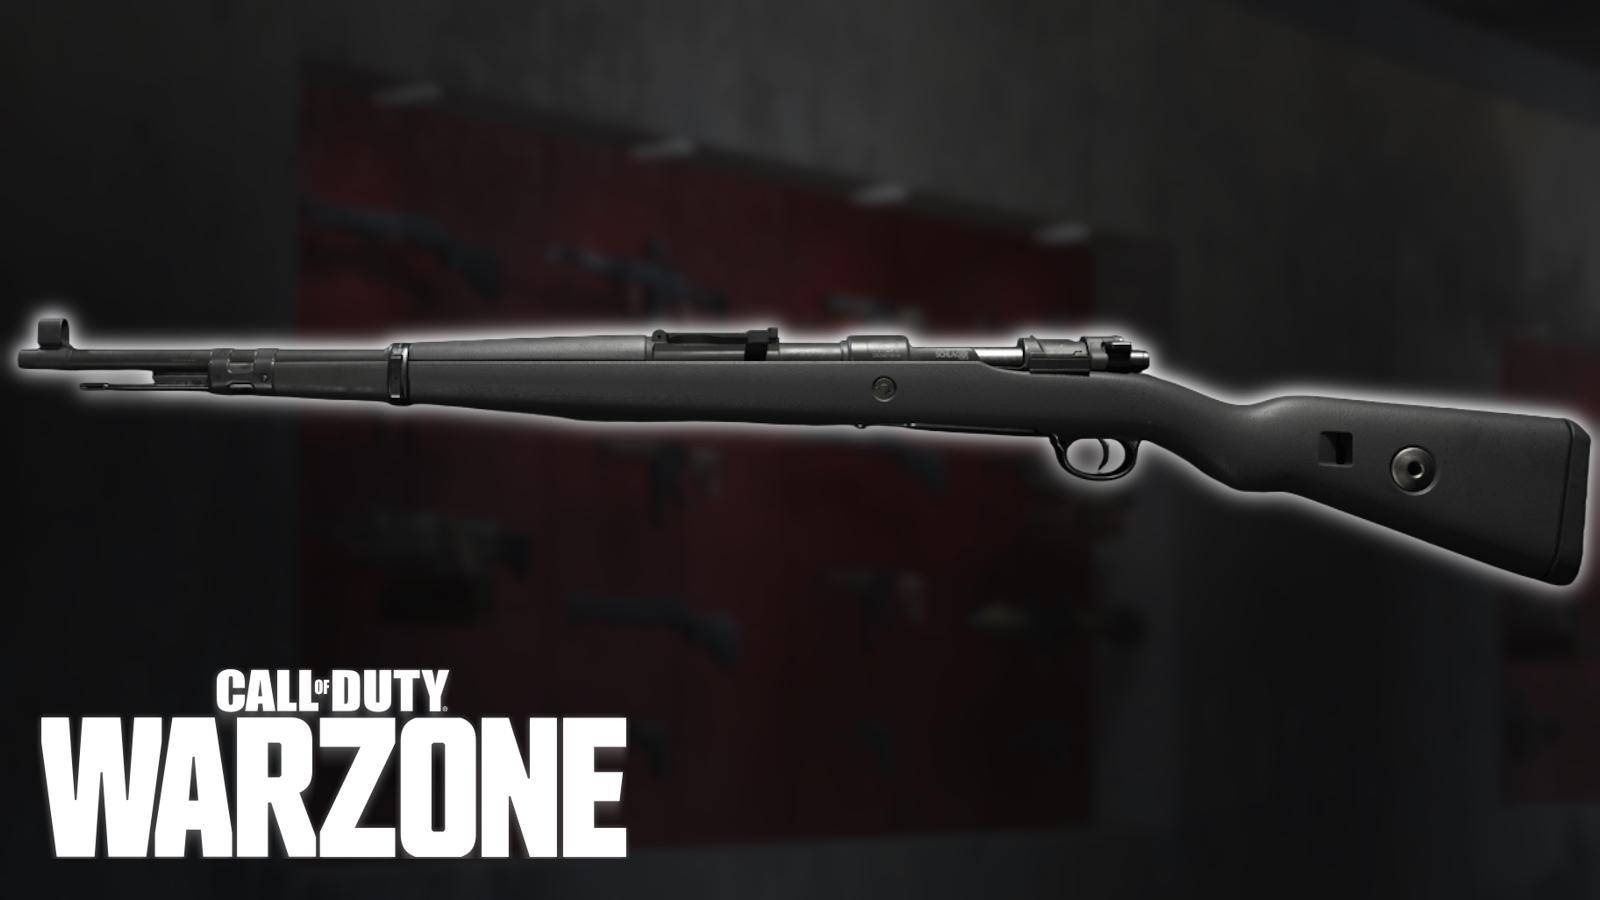 Kar98k marksman rifle in Call of Duty: Warzone